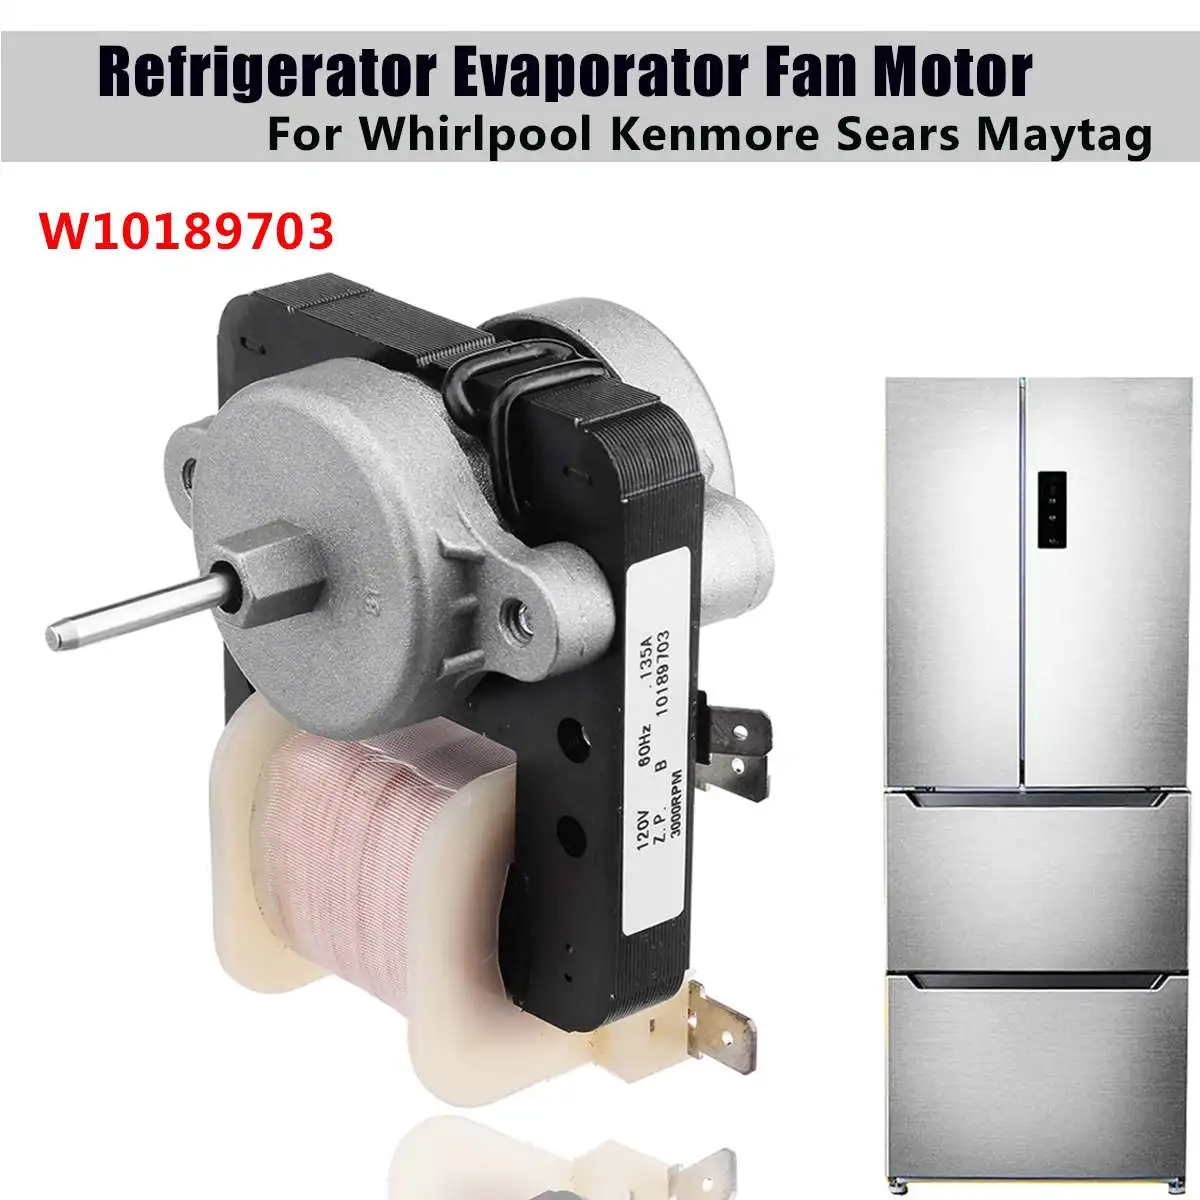 Evaporator Fan Motor Kit for Whirlpool Kenmore W10189703 